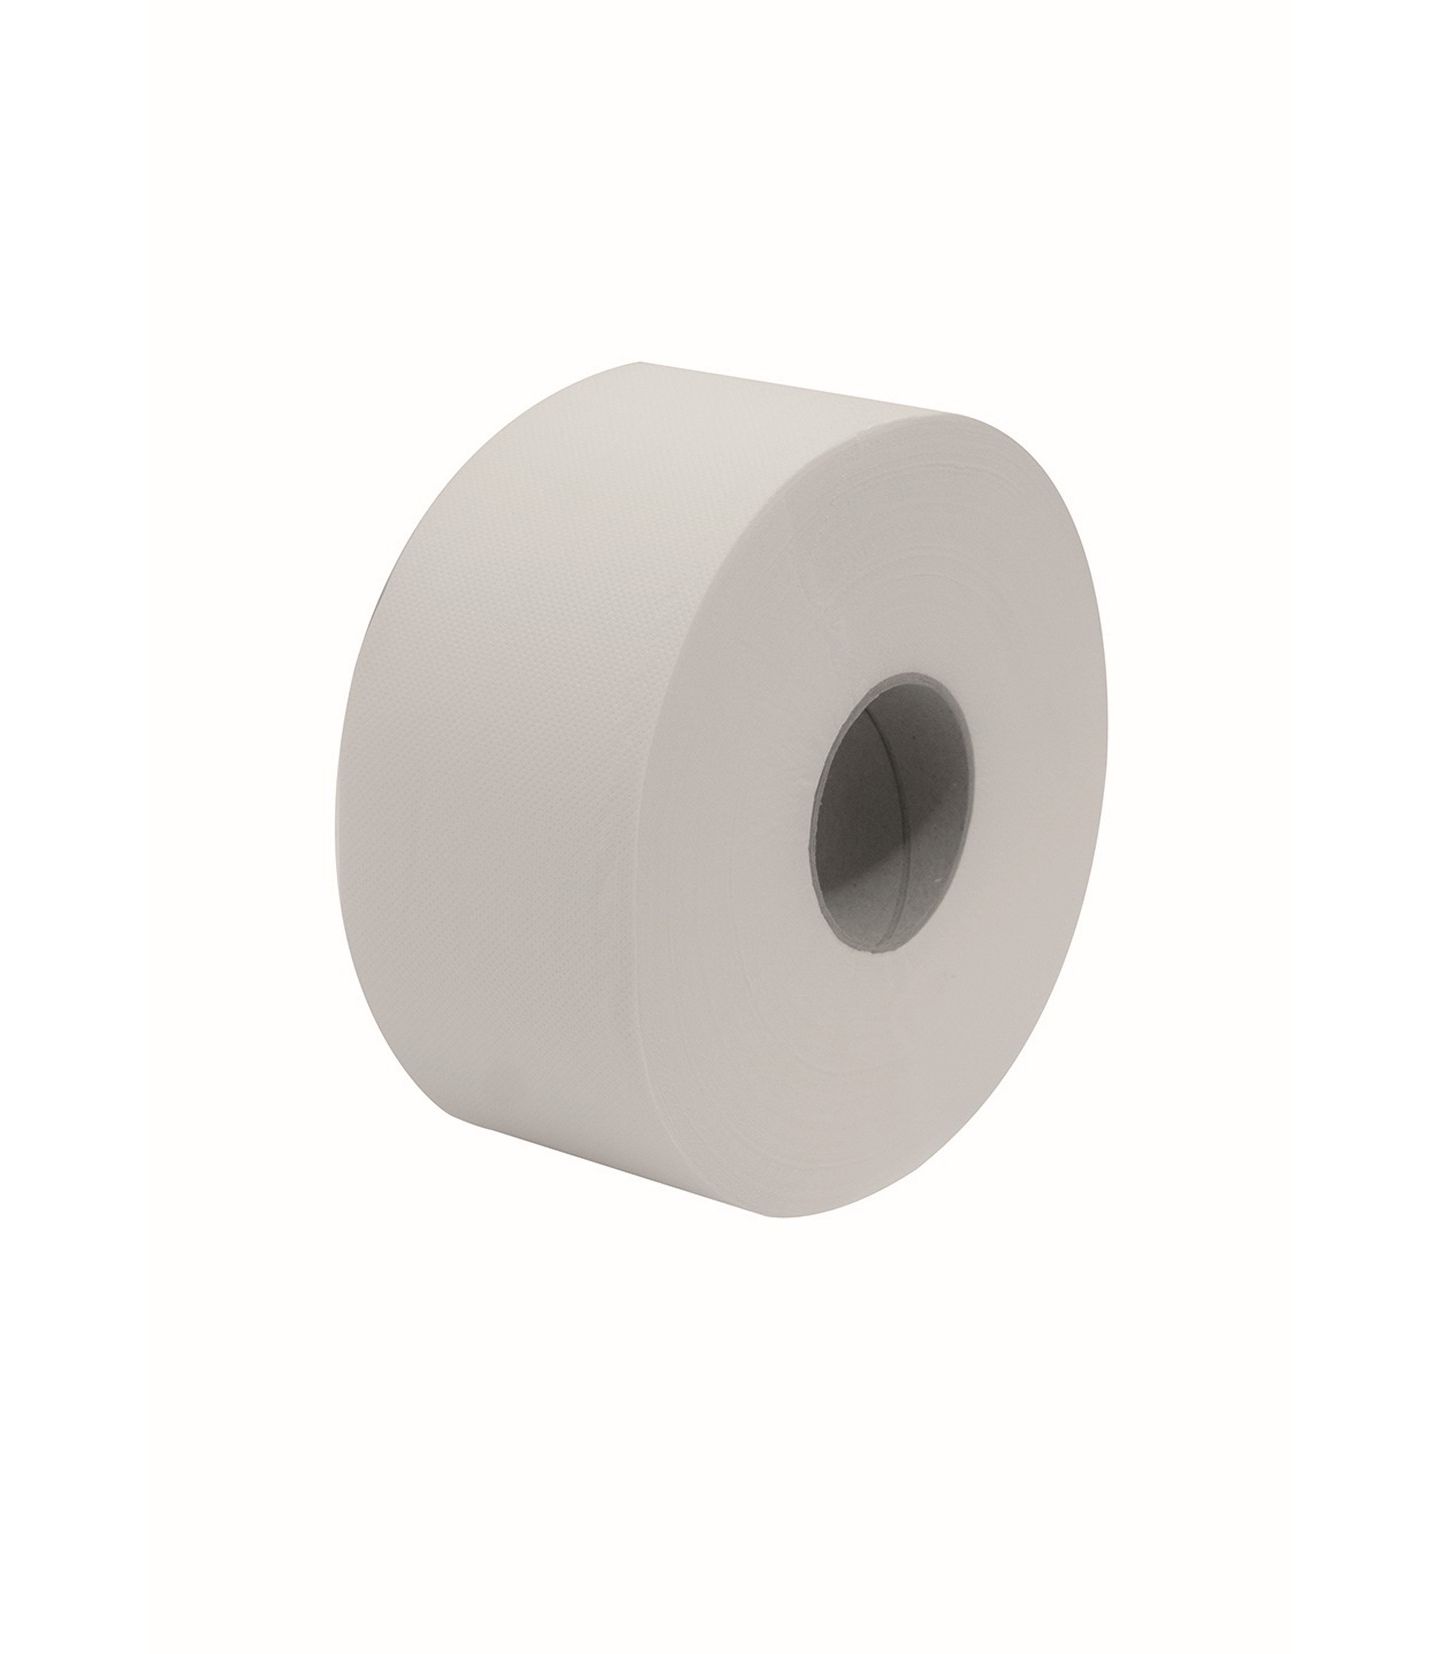 Papier toilette Jumbo - 12 rouleaux - 180 m : : Epicerie